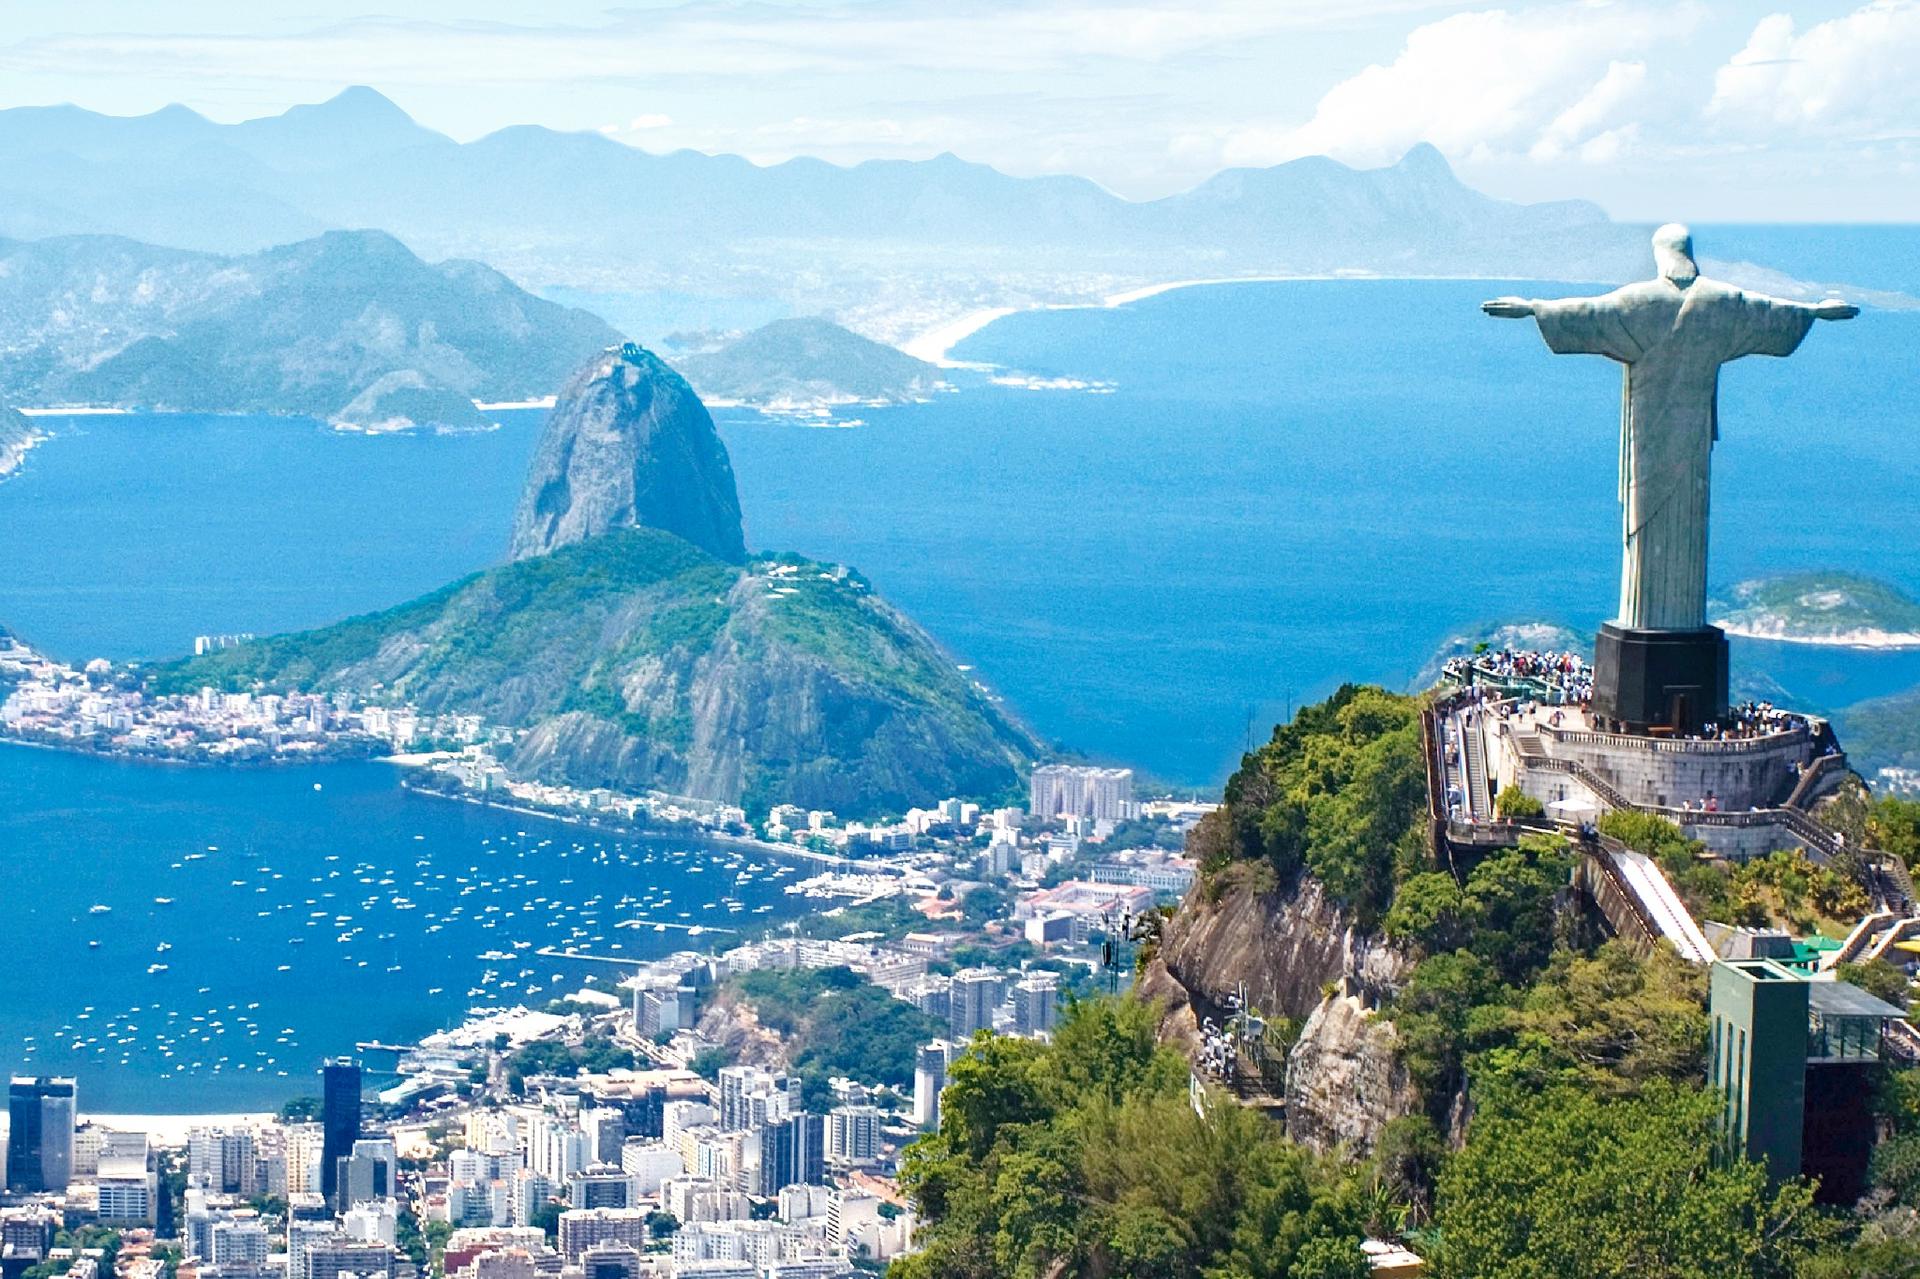 Brazil, Rio de Janeiro - Christ the Redeemer